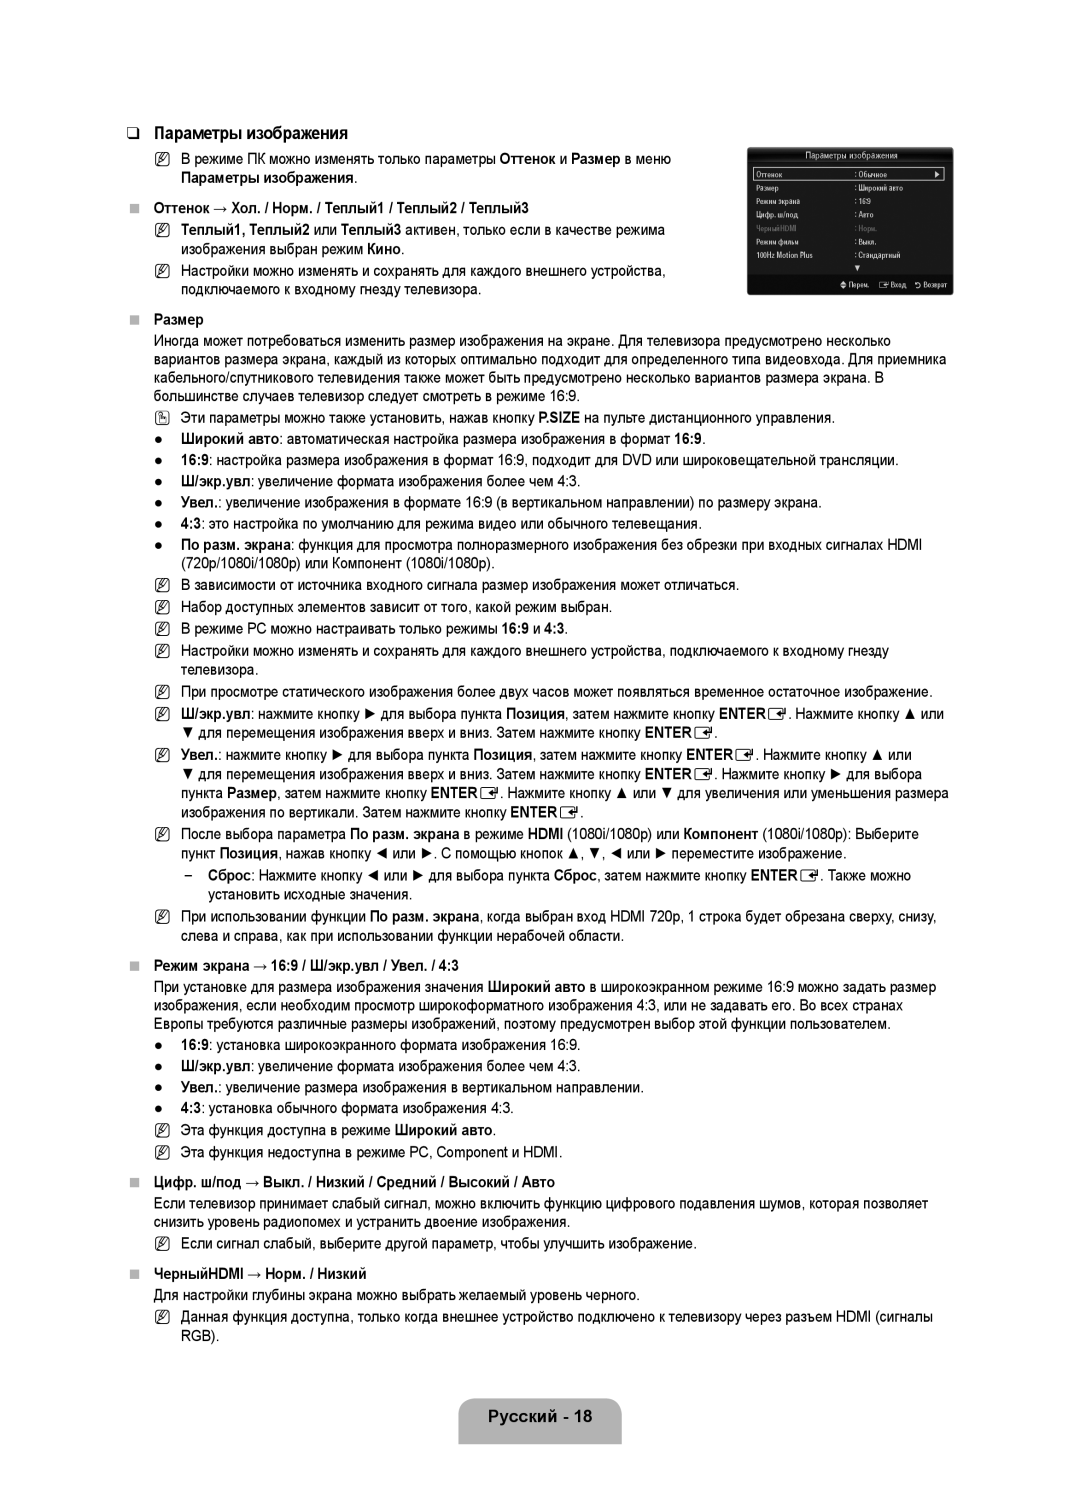 Samsung UE40B6000VWXZG manual Параметры изображения, Оттенок → Хол. / Норм. / Теплый1 / Теплый2 / Теплый3, Размер, Русский 